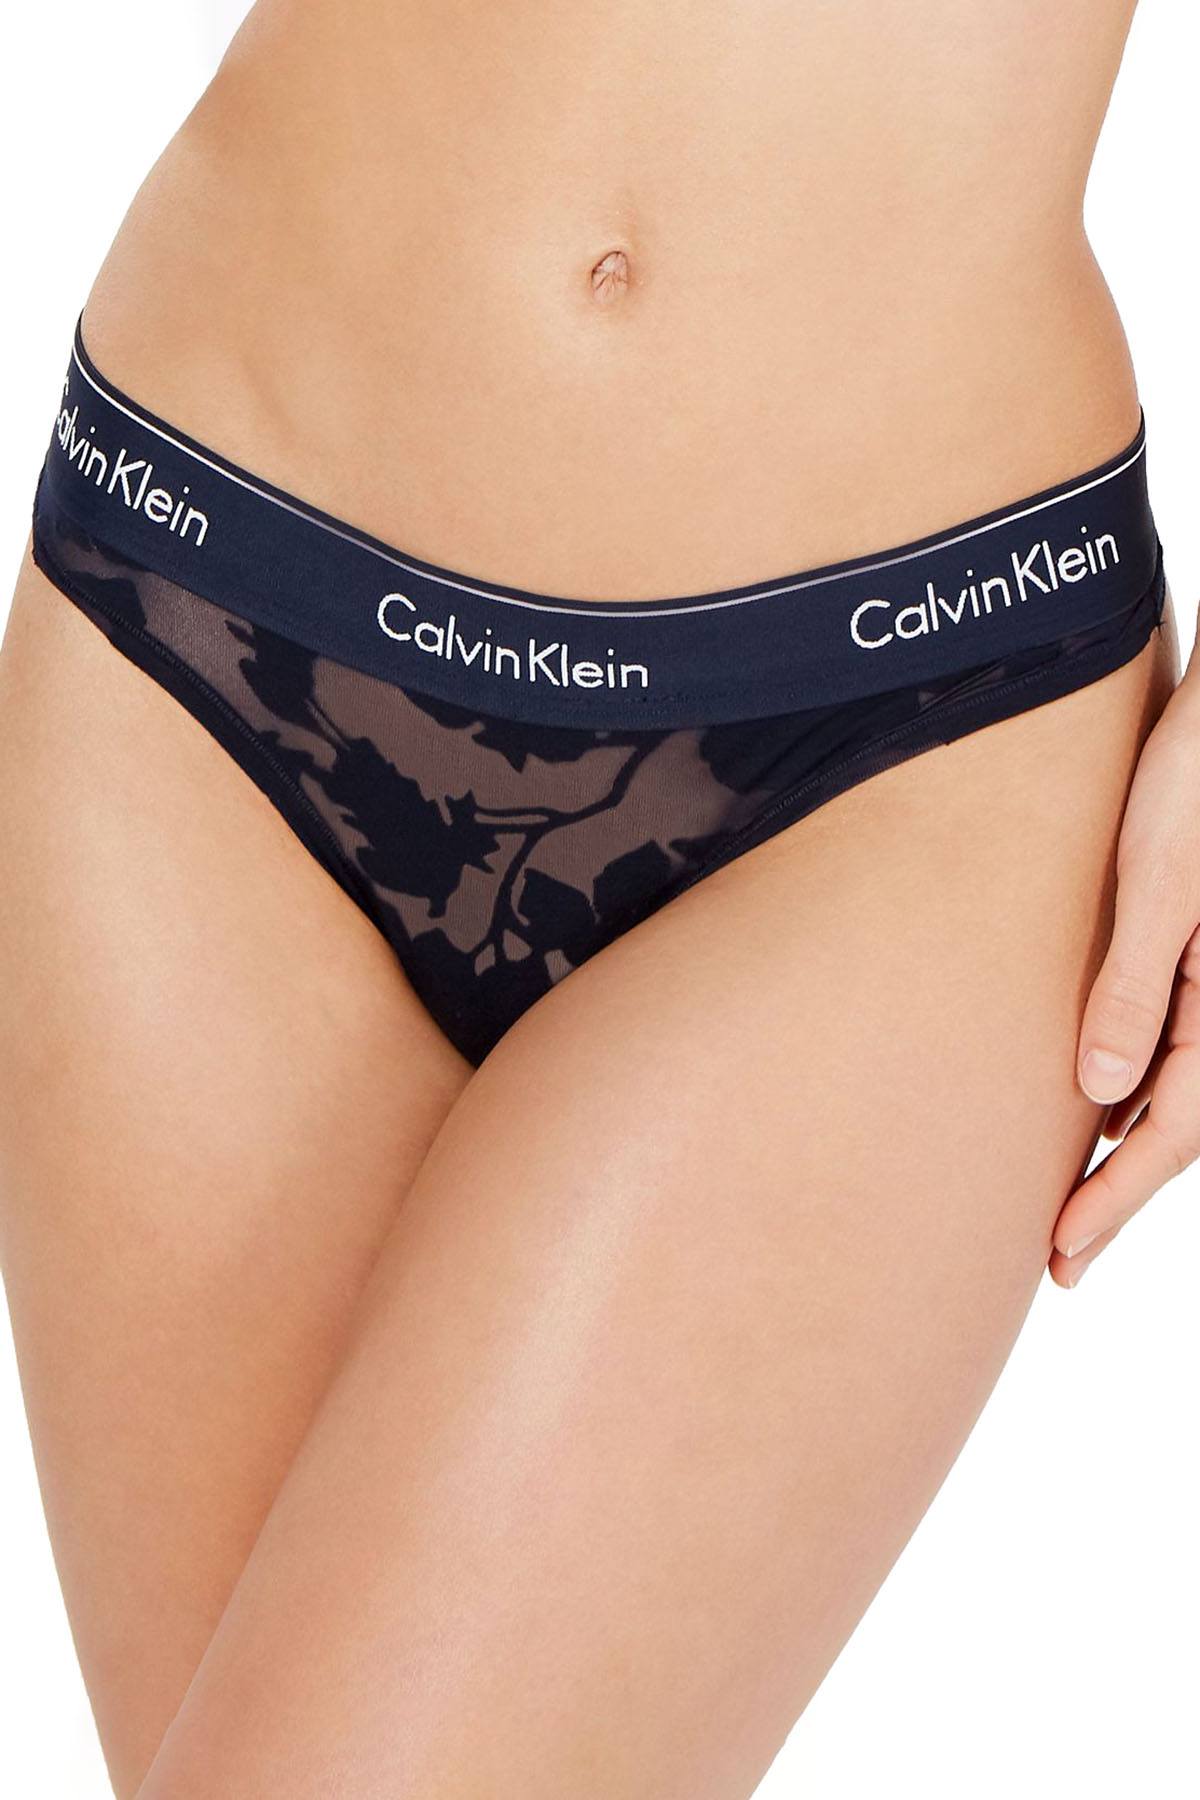 Calvin Klein Modern Cotton Thong in Navy Floral Burnout – CheapUndies